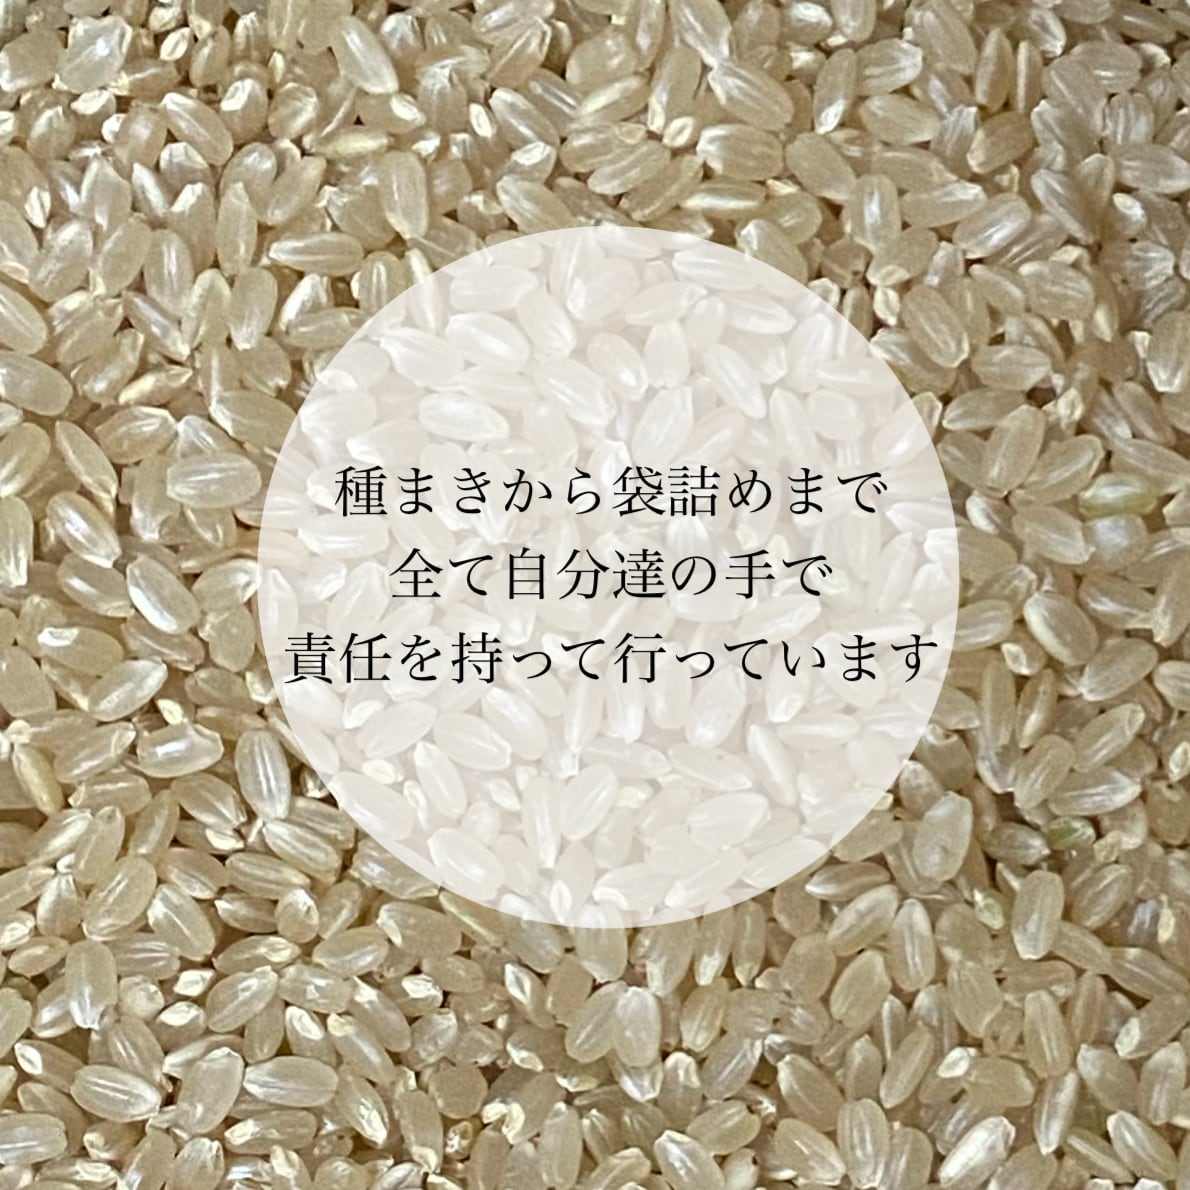 こめこ様専用✴︎玄米✴︎ササニシキ20キロ - 米